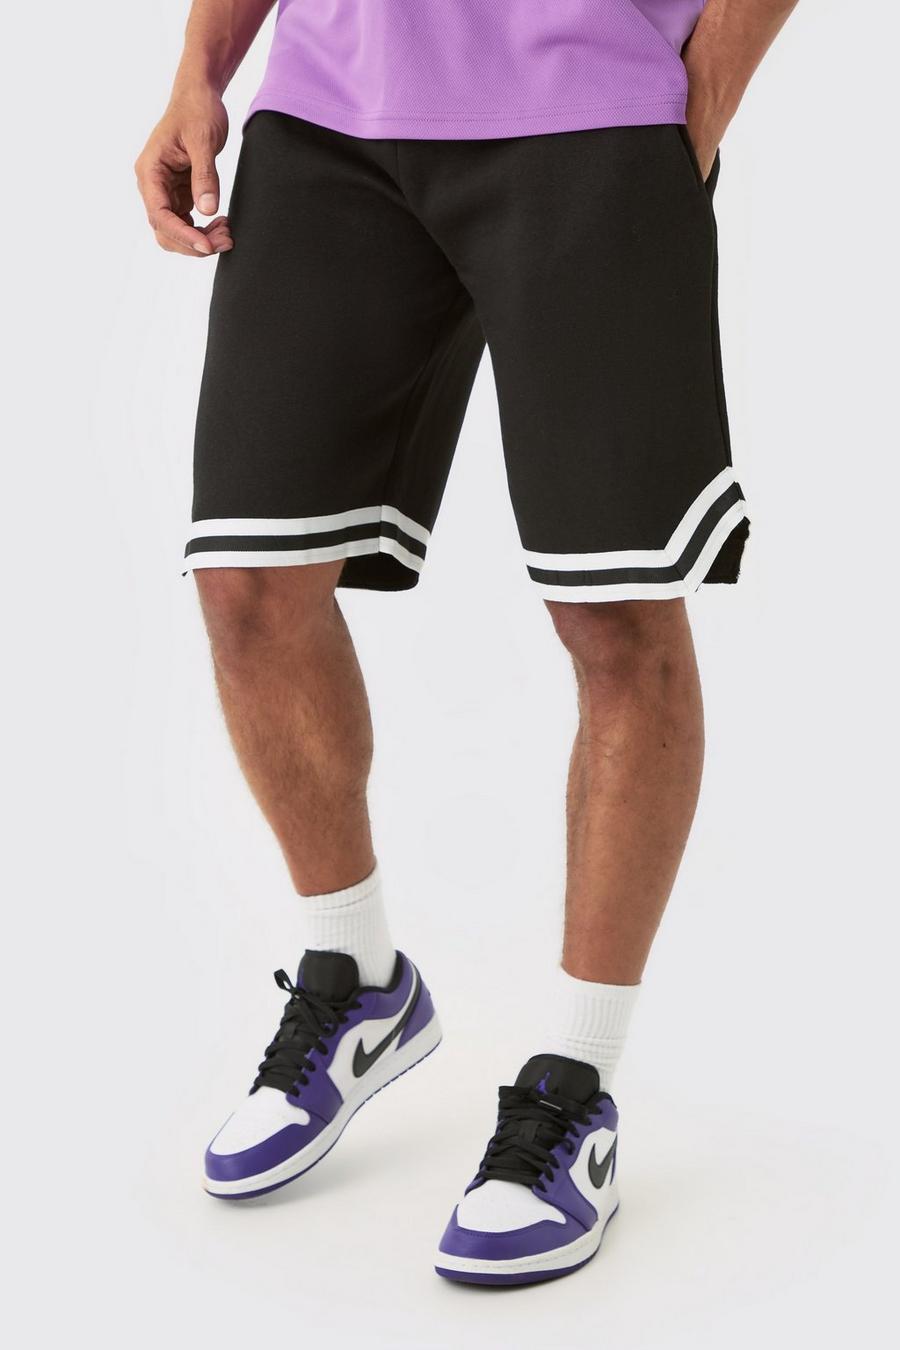 Pantalón corto Tall de baloncesto y tela jersey con cinta, Black negro